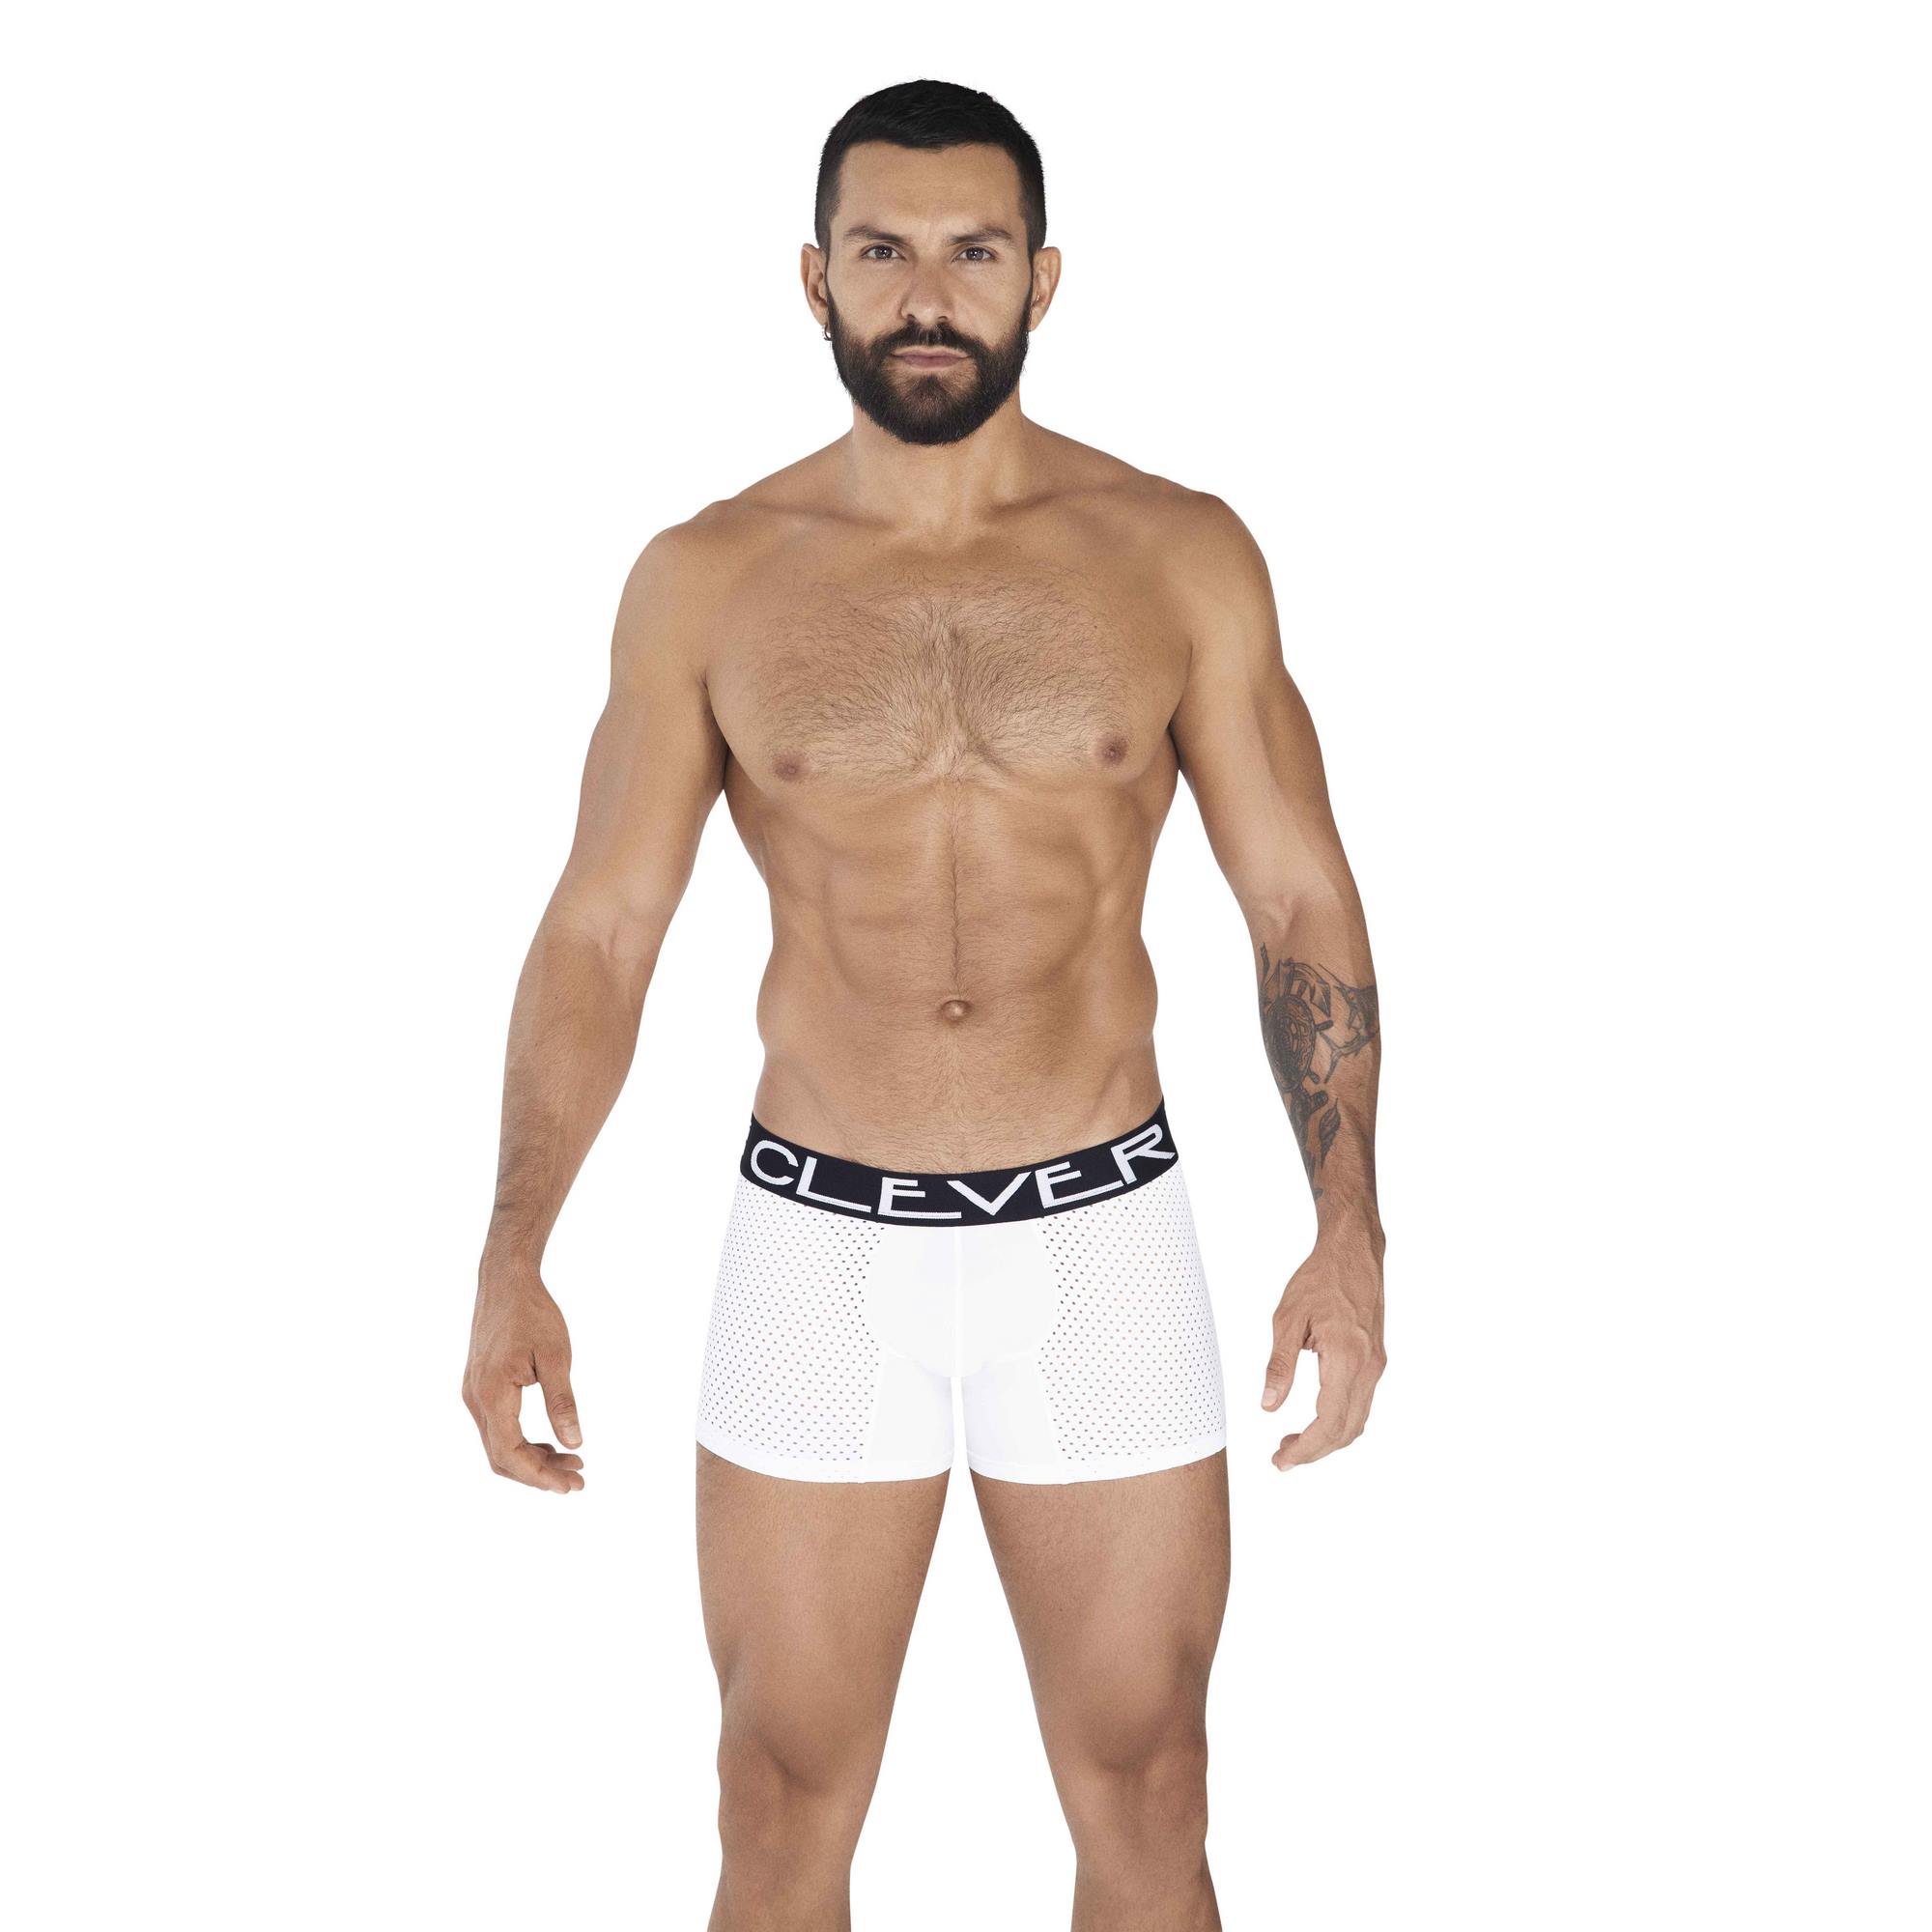 Трусы мужские Clever Masculine Underwear 0361 белые M